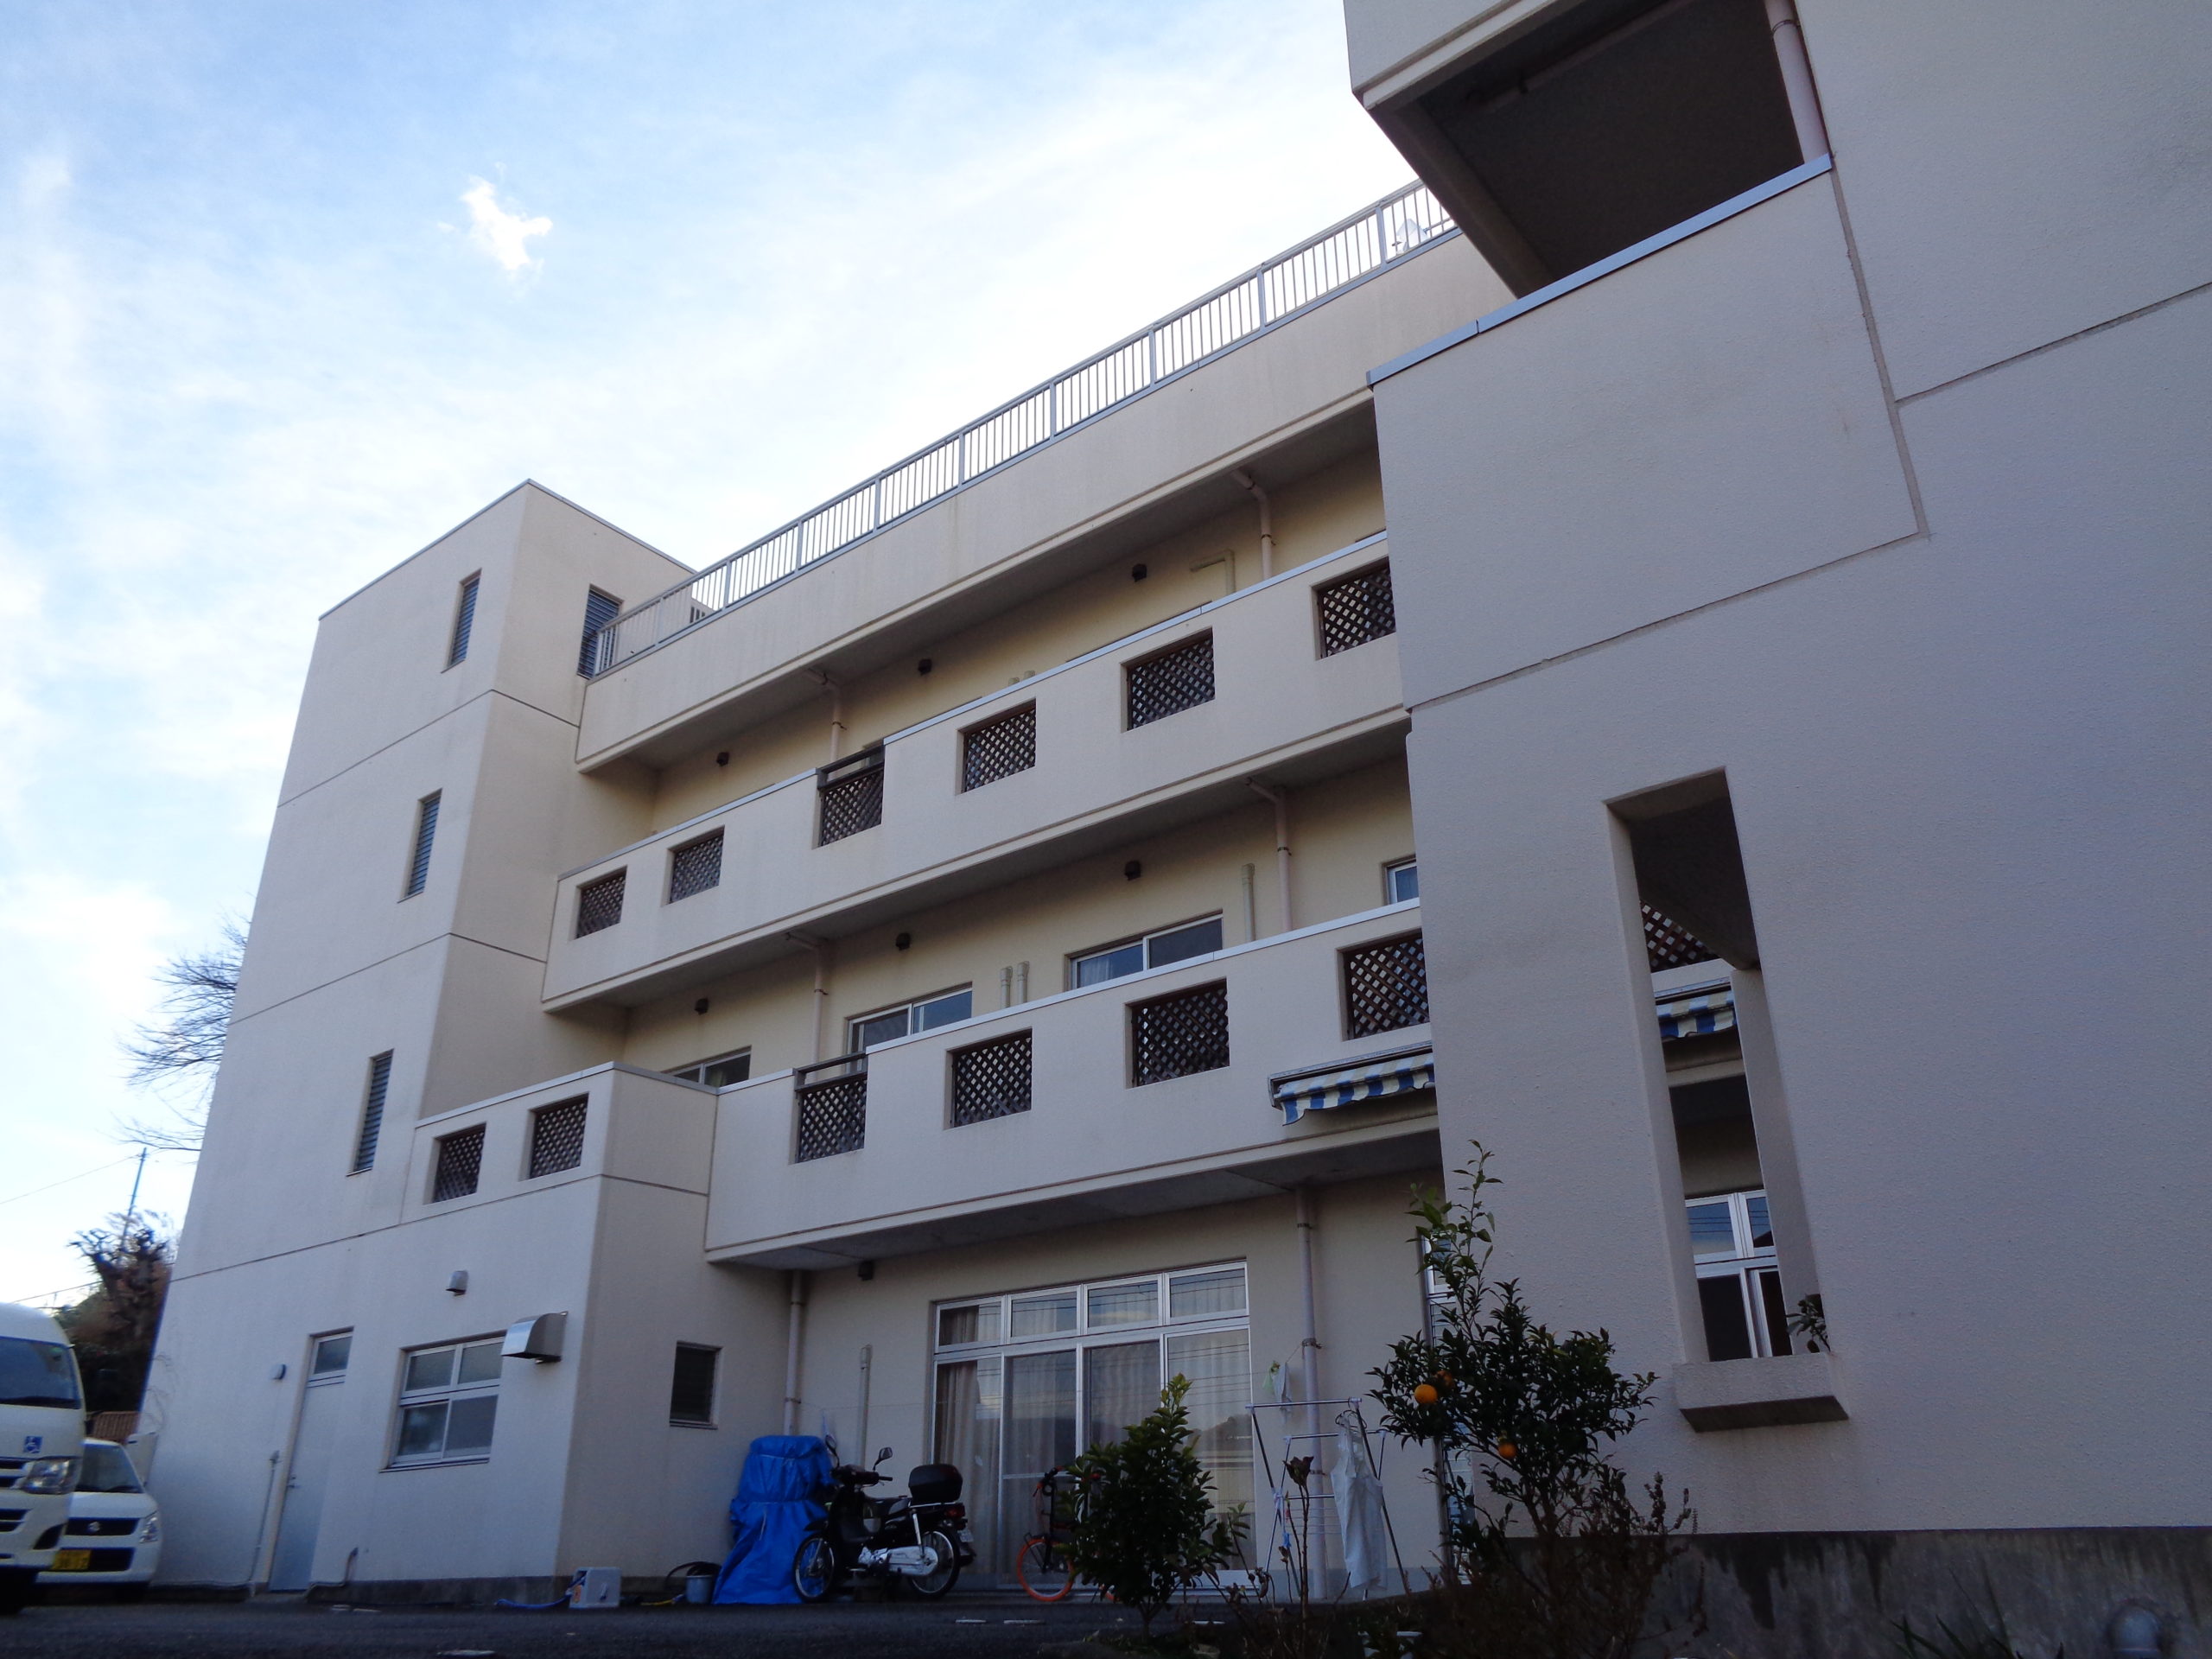 クラシオン | 静岡県伊東市のグループホーム